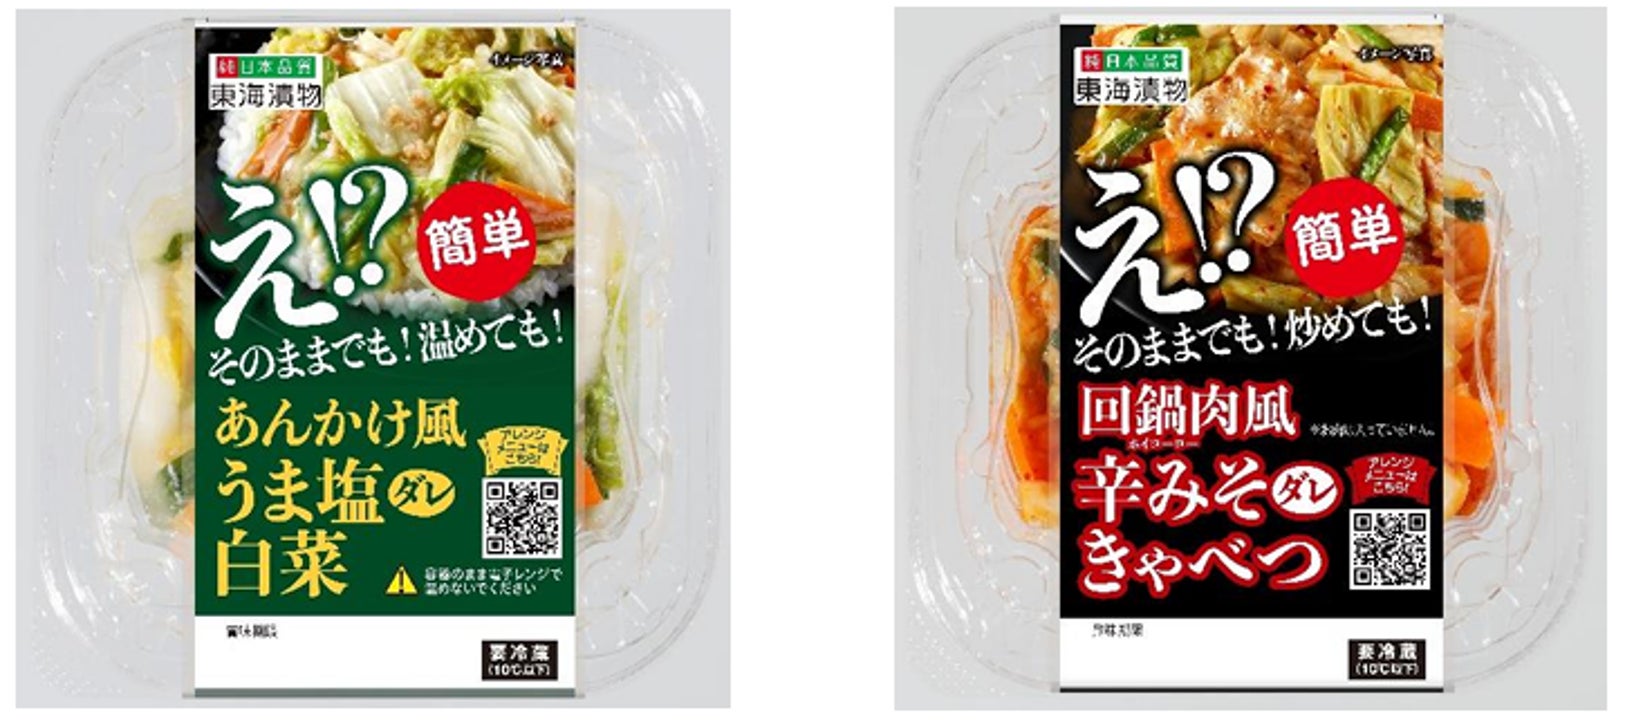 【料理SNSスナップディッシュ】生活者との共創により東海漬物「惣菜感覚の新しい浅漬」の商品開発を支援。